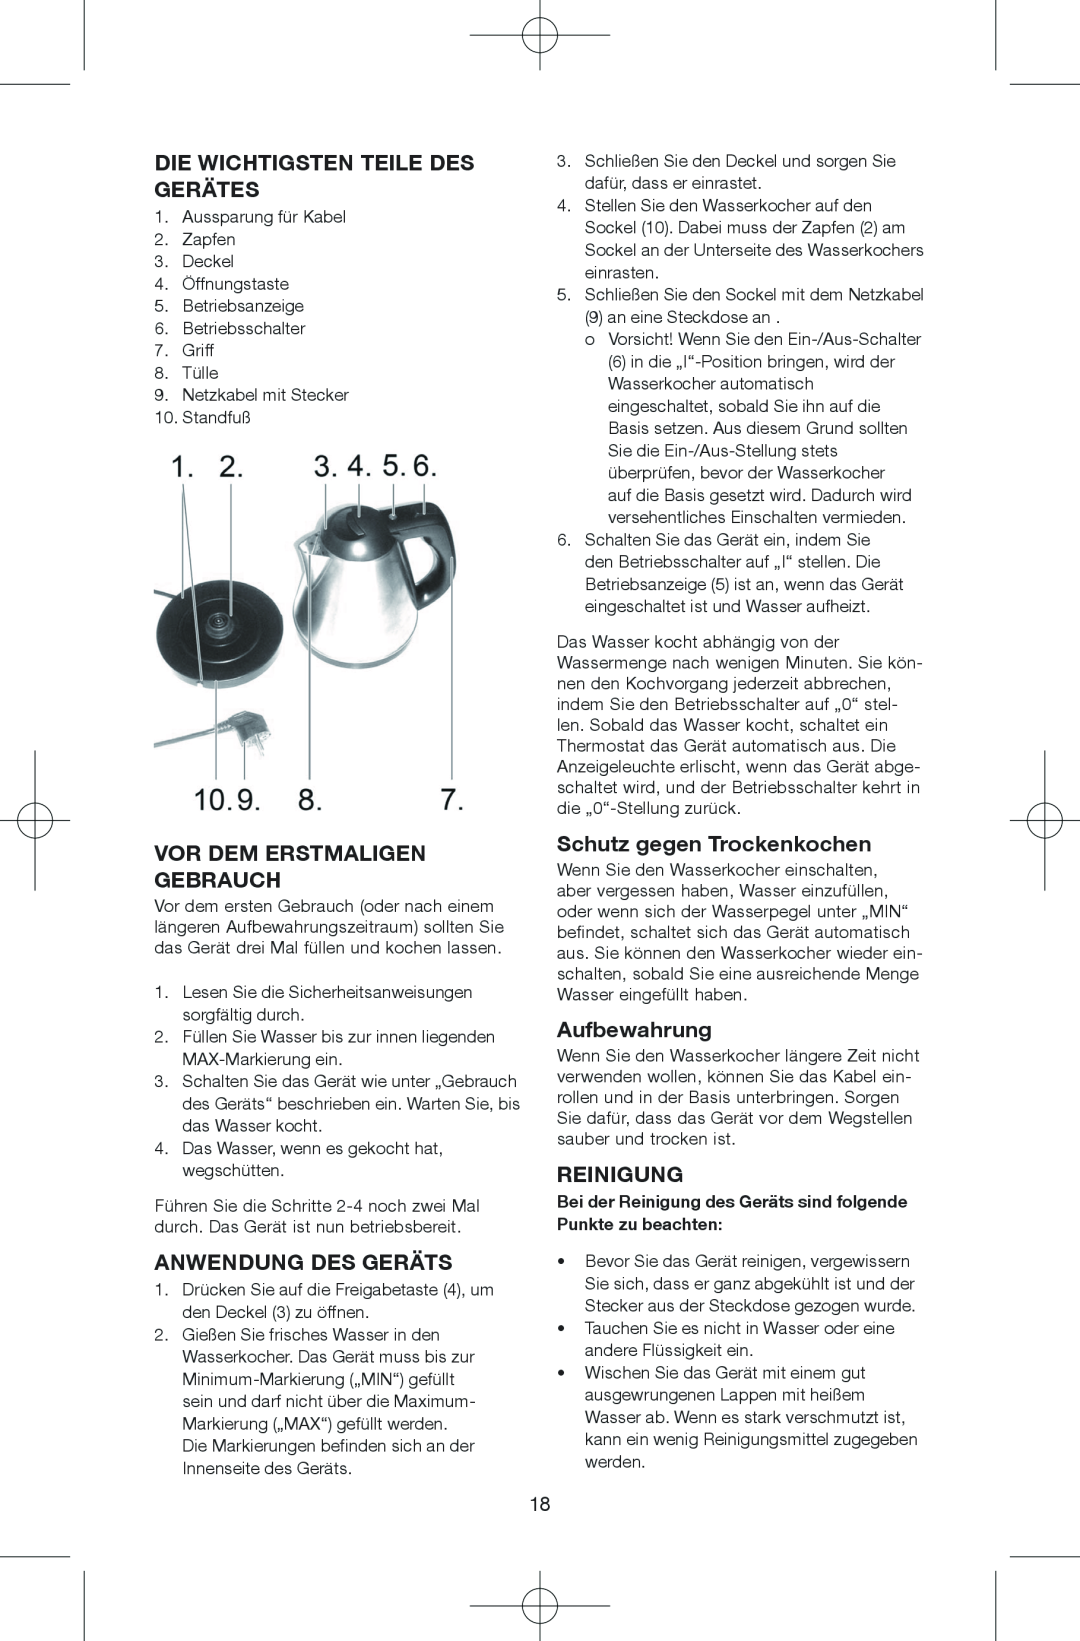 Melissa 645-244 manual Die Wichtigsten Teile Des Gerätes, Vor Dem Erstmaligen Gebrauch, Anwendung Des Geräts, Aufbewahrung 